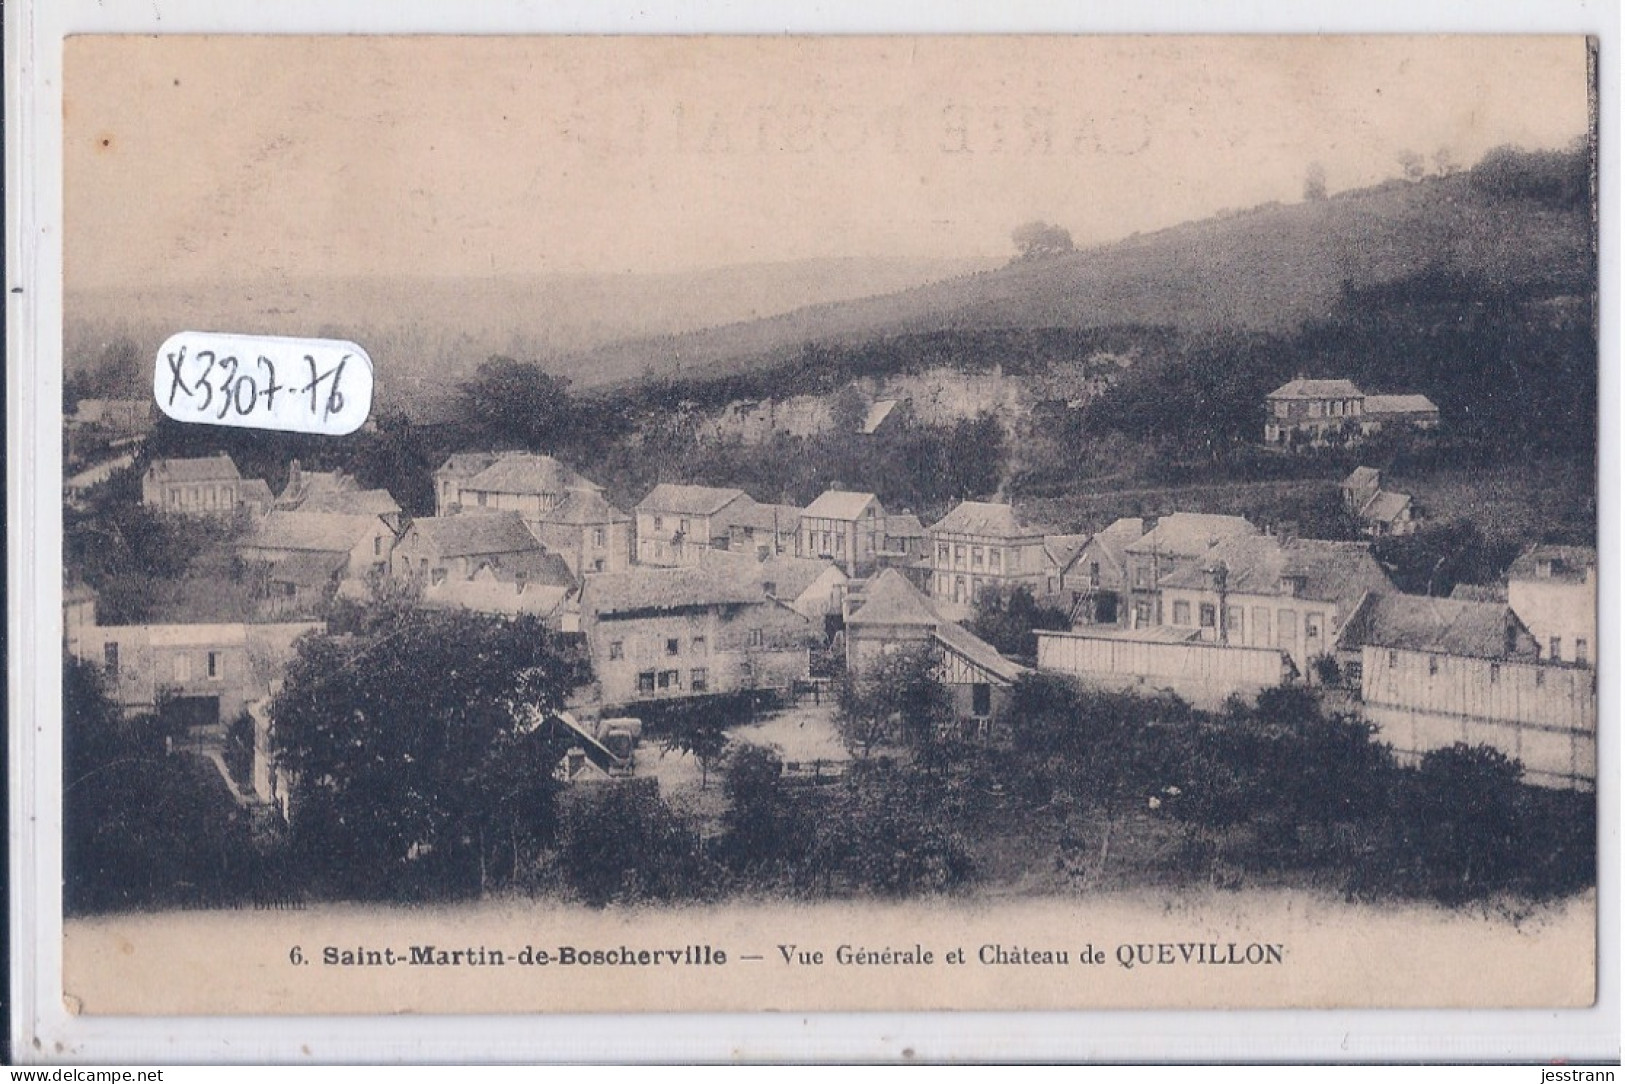 SAINT-MARTIN-DE-BOSCHERVILLE- VUE GENERALE ET CHATEAU DE QUEVILLON - Saint-Martin-de-Boscherville